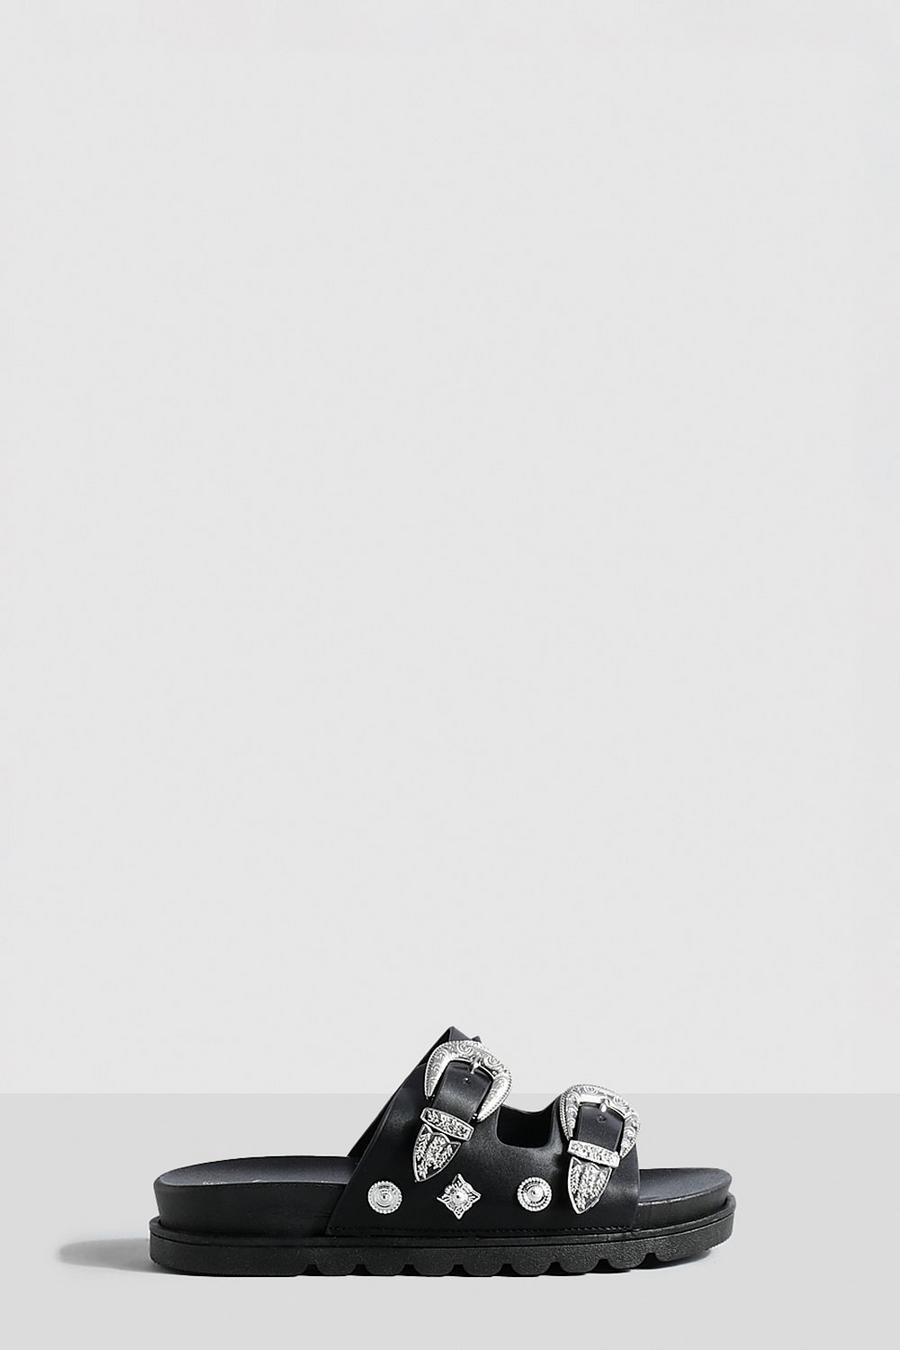 Sandalias gruesas estilo Western con ribete metálico y plantilla blanda, Black image number 1